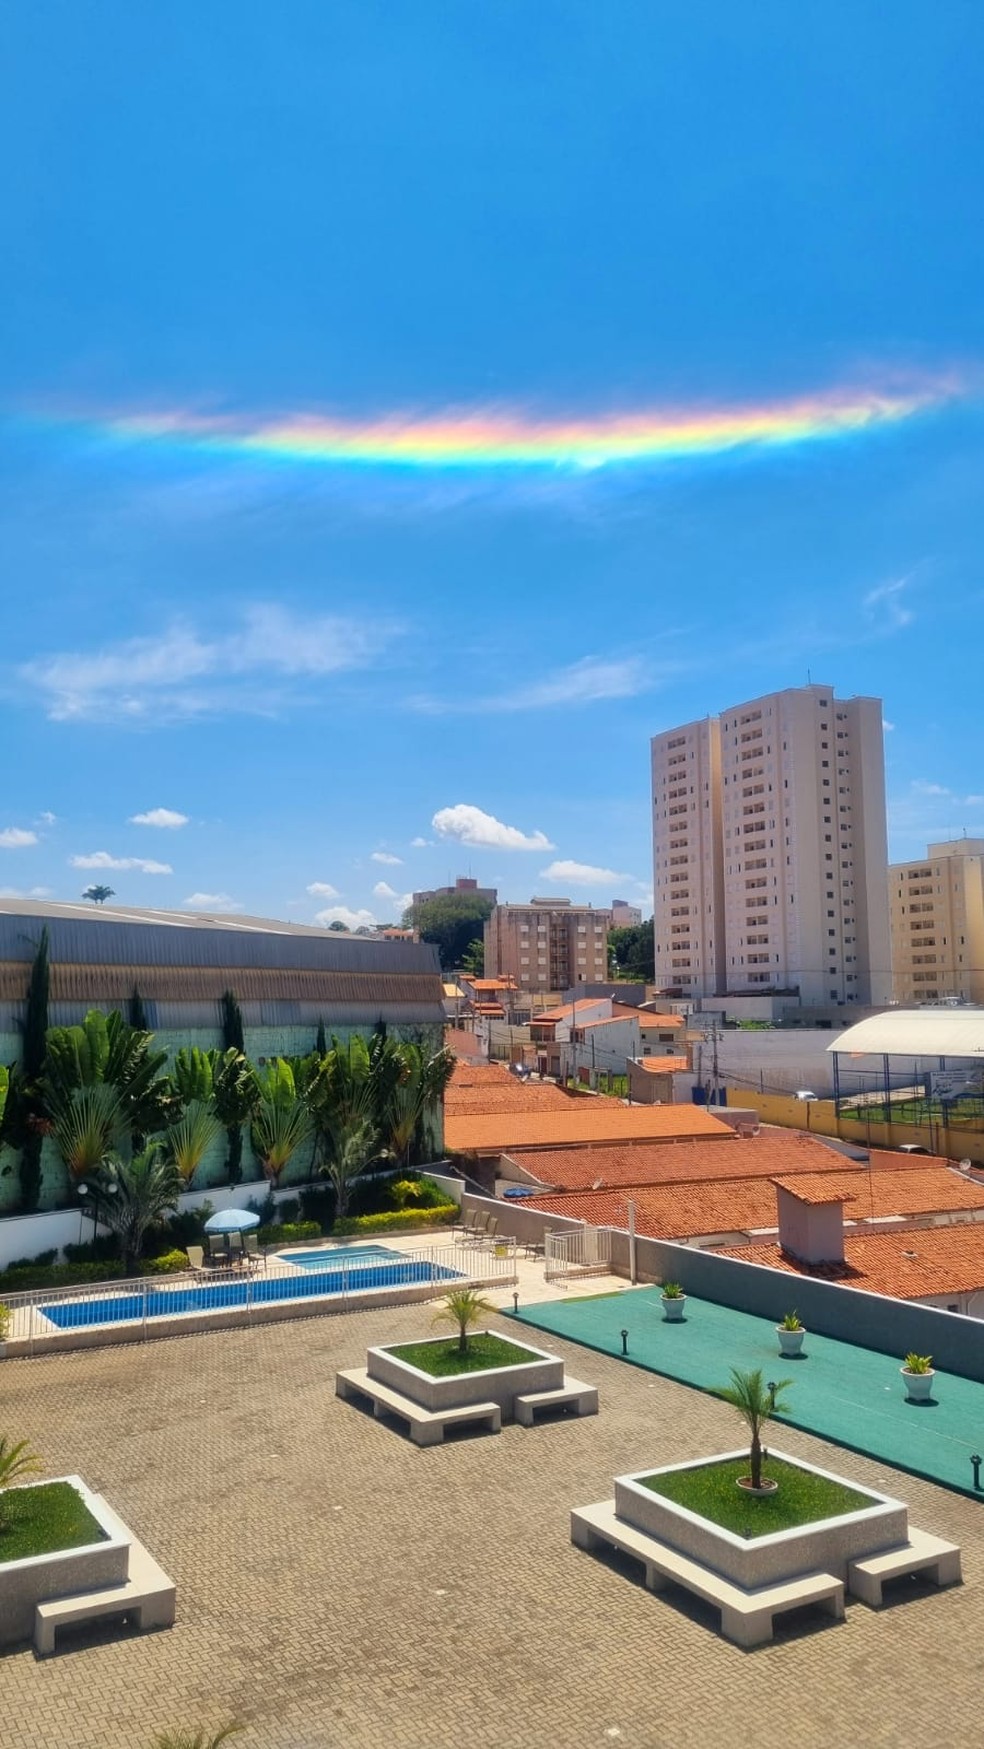 Nuvem colorida é um fenômeno óptico da difração da luz solar sobre as nuvens cirrus em altitude — Foto: Arquivo Pessoal/Fernando Negrão Duarte